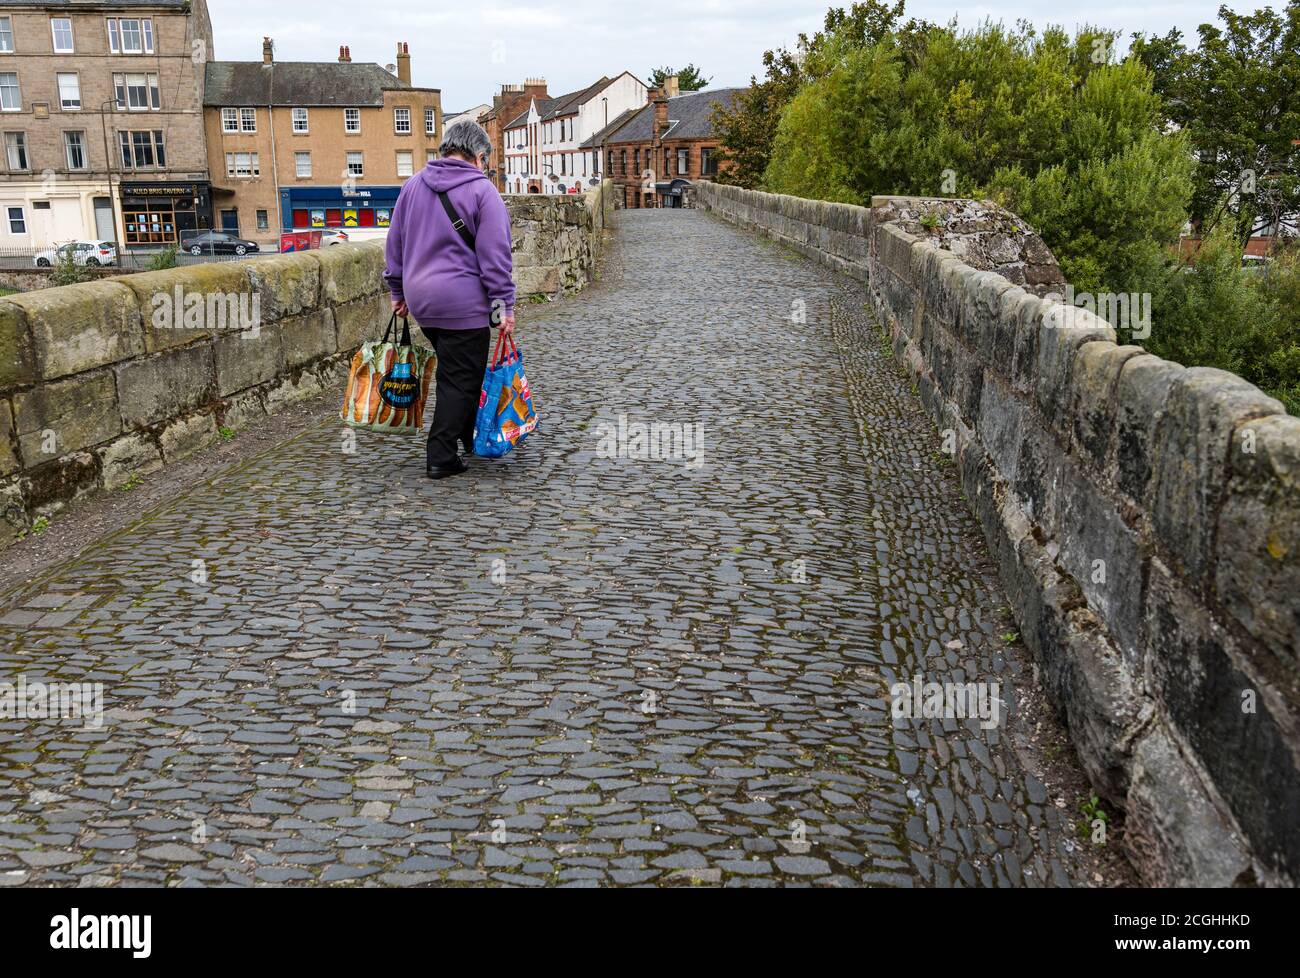 Femme transportant des sacs d'épicerie marchant sur le vieux pont romain pavé, Musselburgh, East Lothian, Écosse, Royaume-Uni Banque D'Images